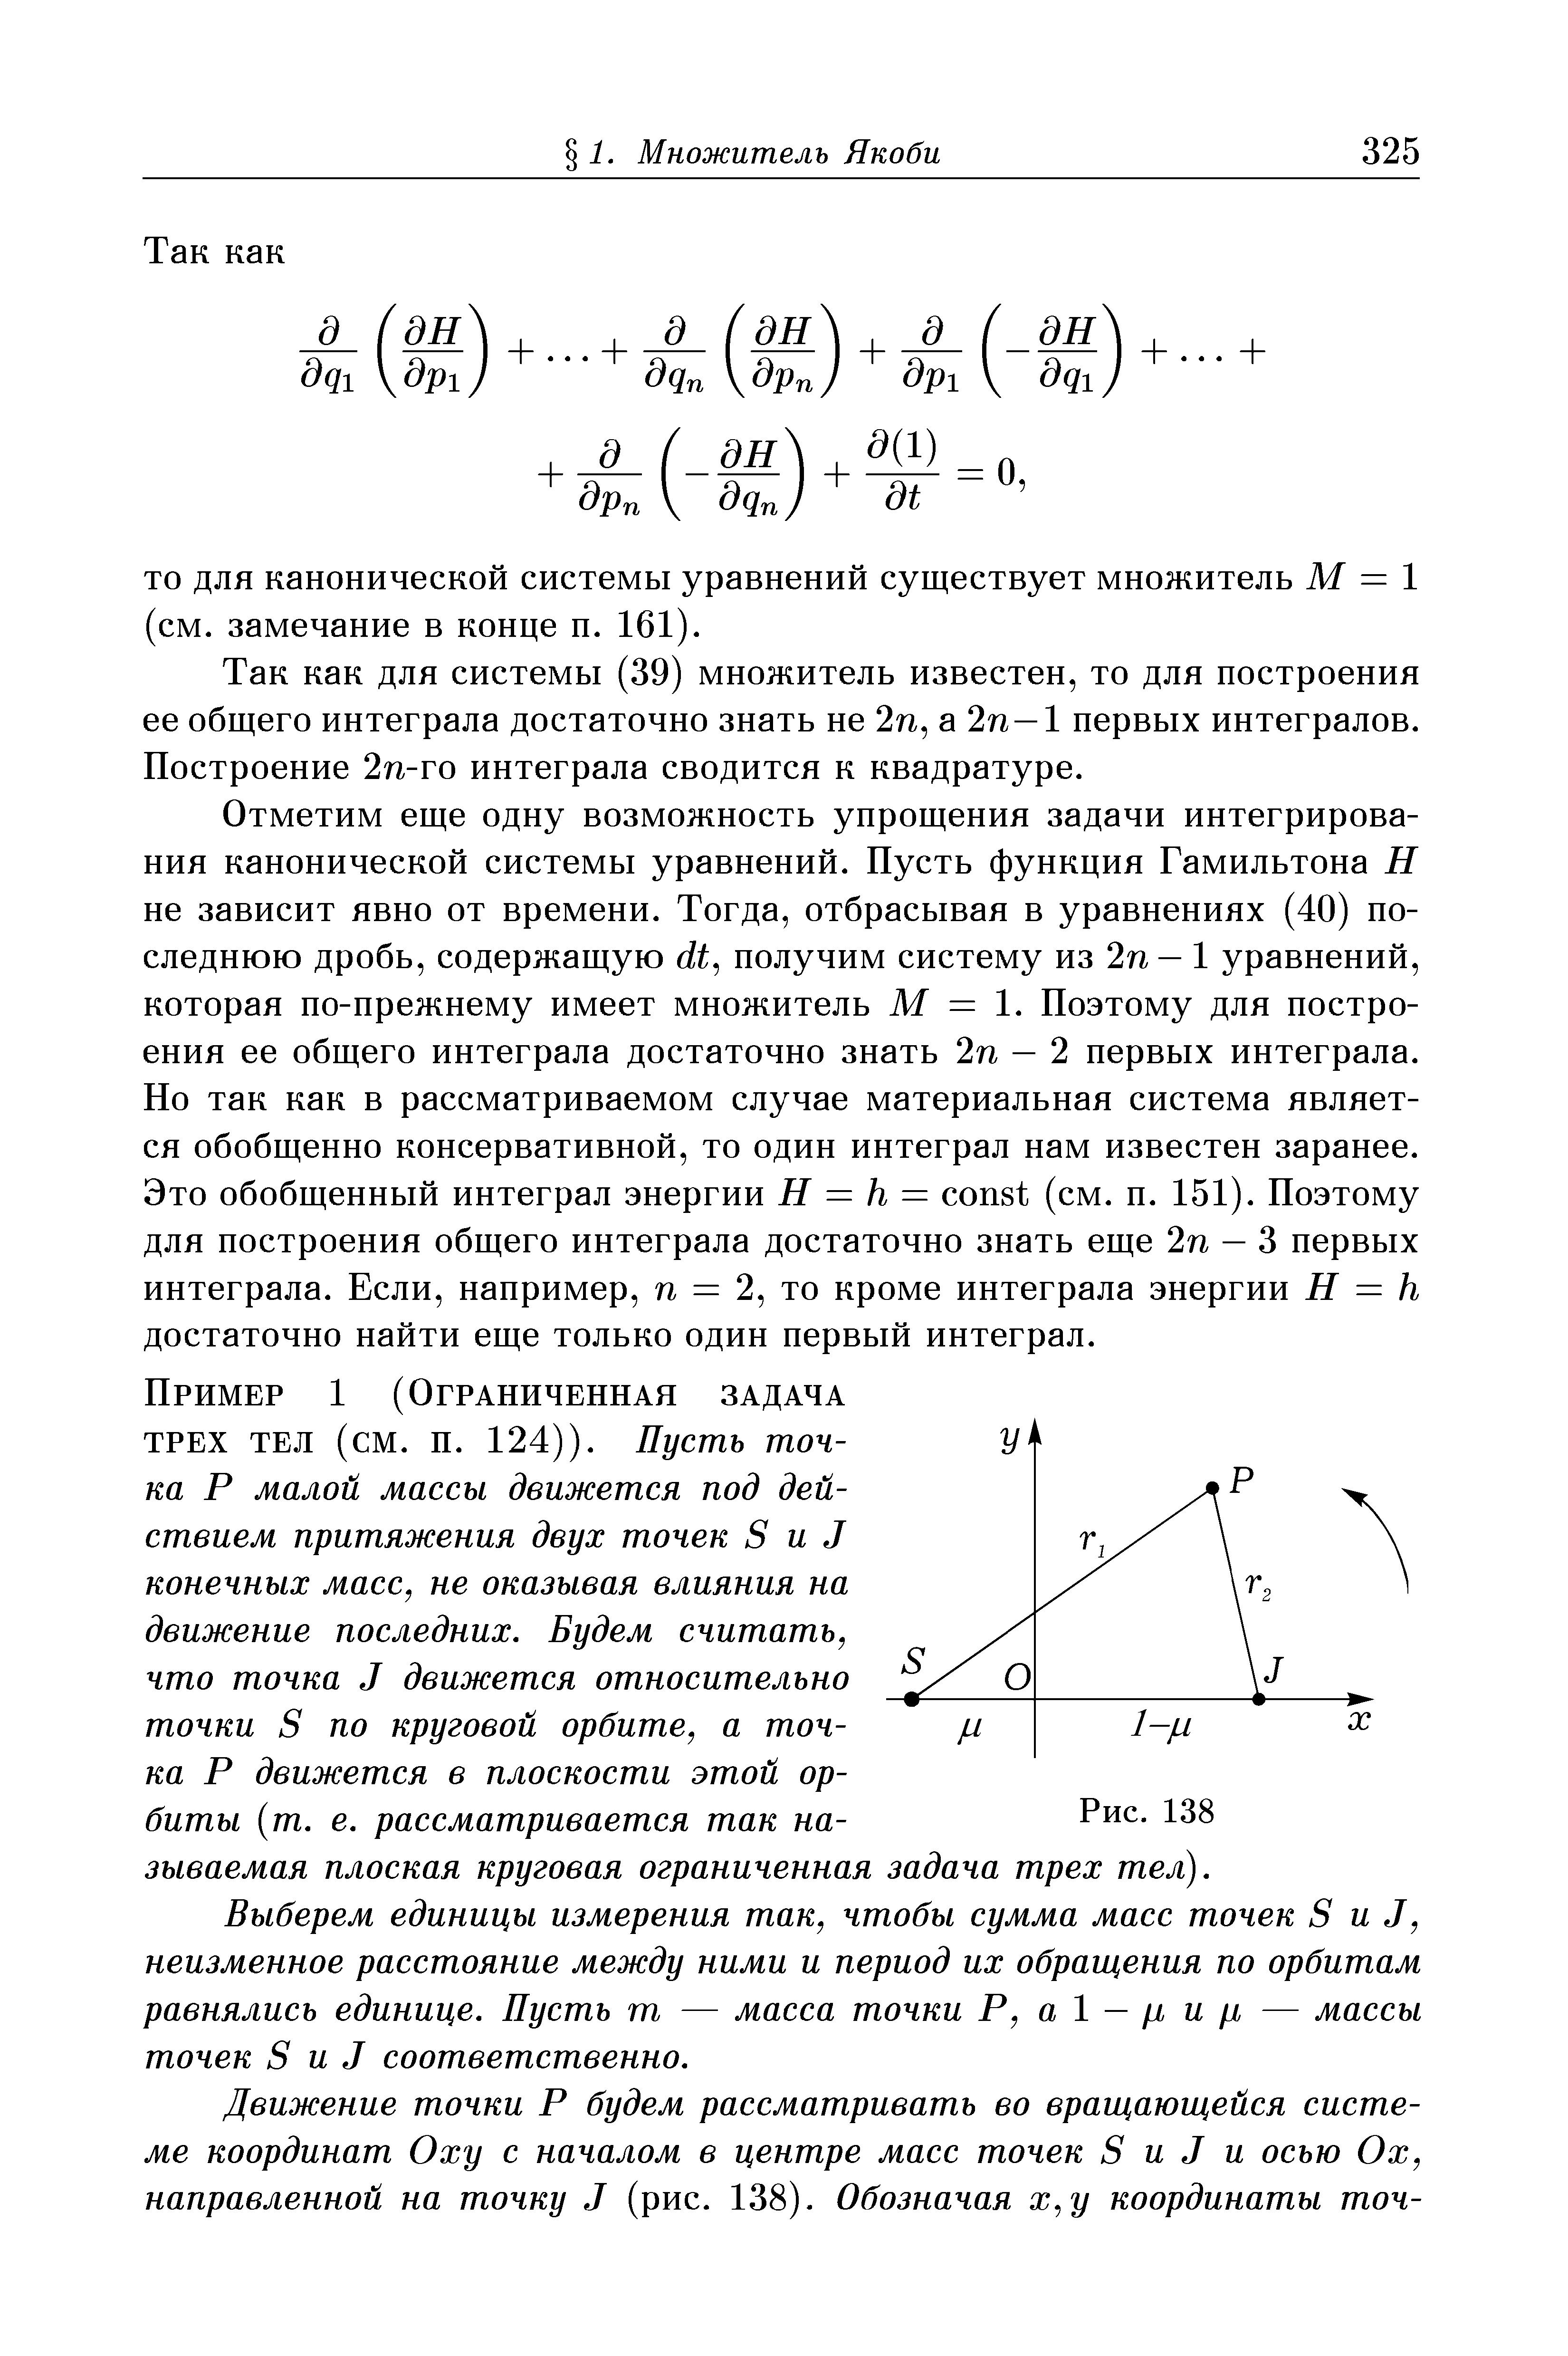 ТО для канонической системы уравнений существует множитель М = 1 (см. замечание в конце п. 161).
